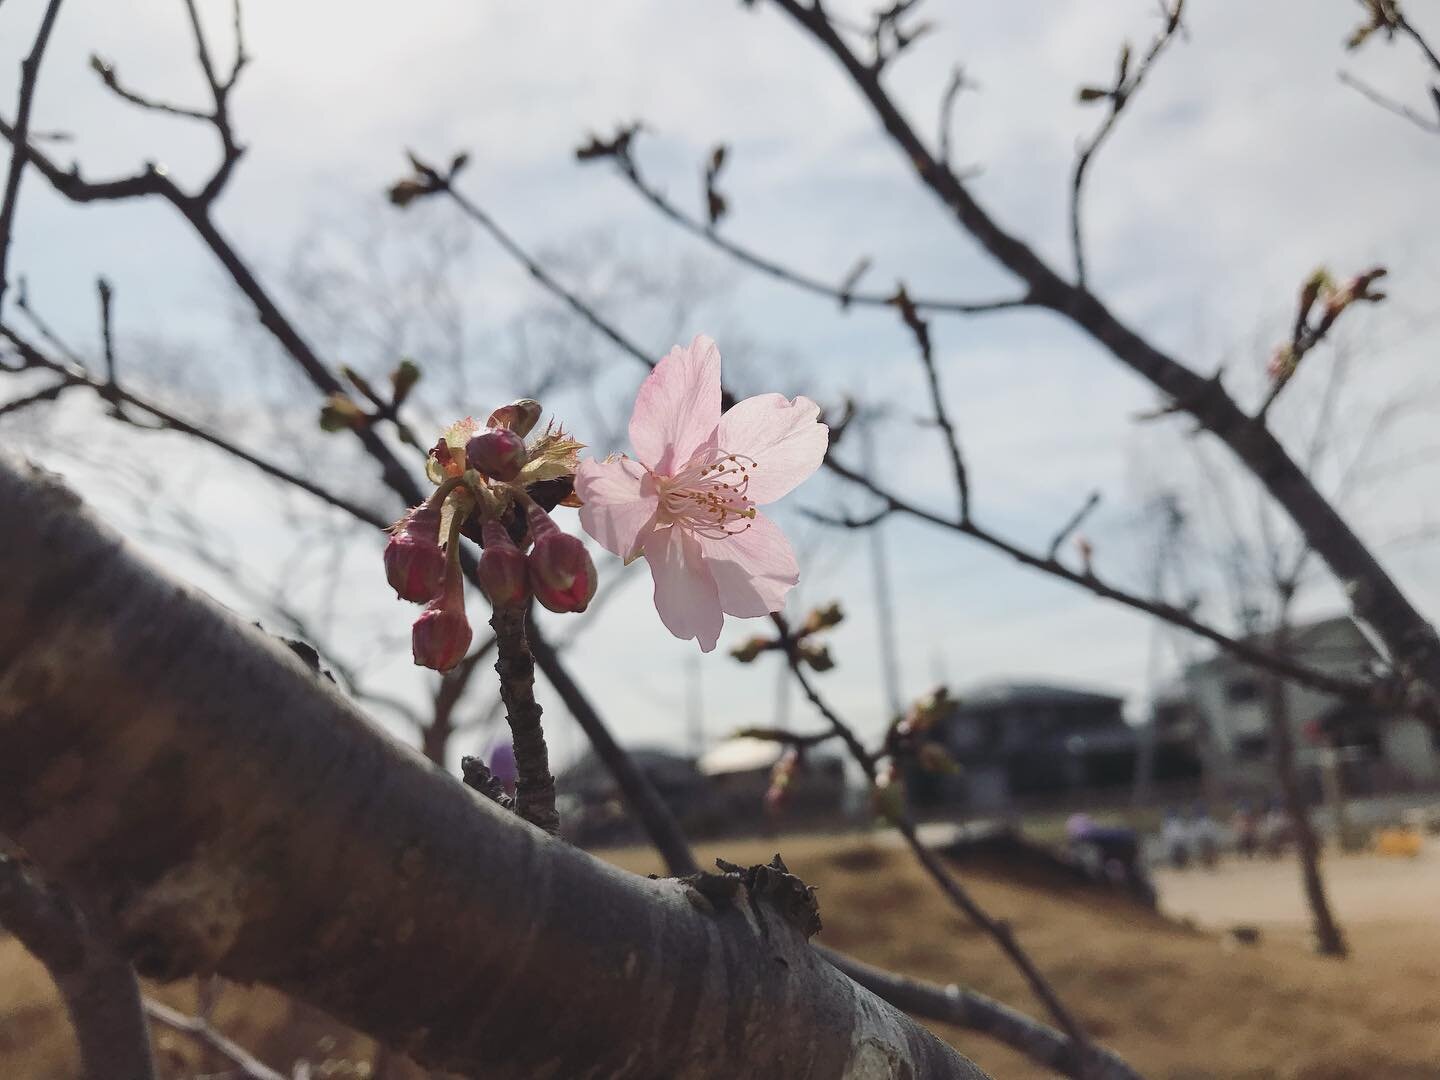 あたたかくなりましたね。
九州では春一番が吹いたとか。

園庭の河津桜にも、ぽつり、ぽつりとピンクの花が。
子どもたちも、今日は邪魔な上着を脱ぎ捨てて、泥水遊びにいそしみました。

可愛いブロッコリーも収穫したよ！